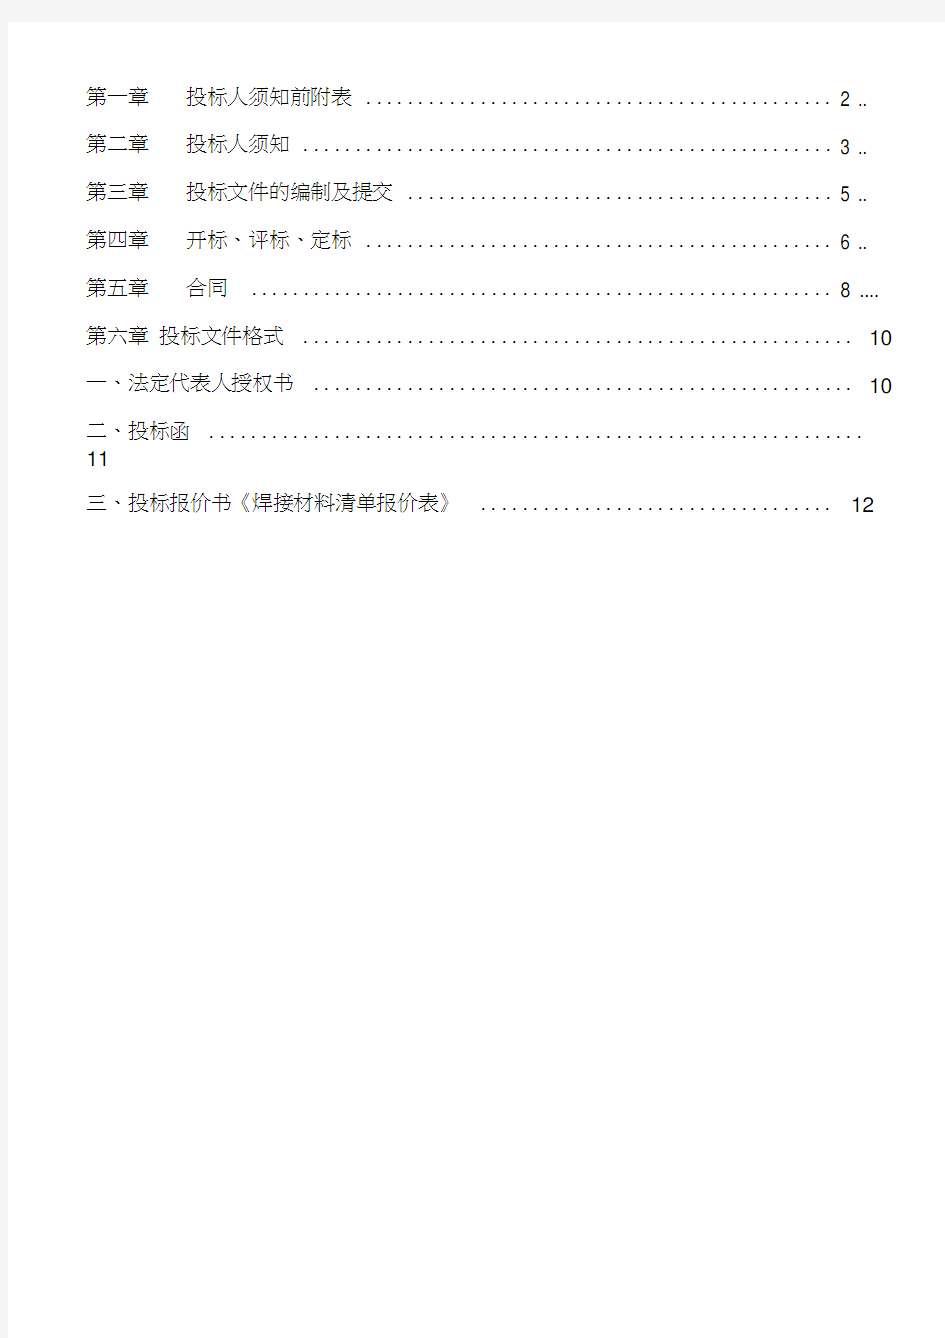 材料采购类-招标文件最新范本(2013730)